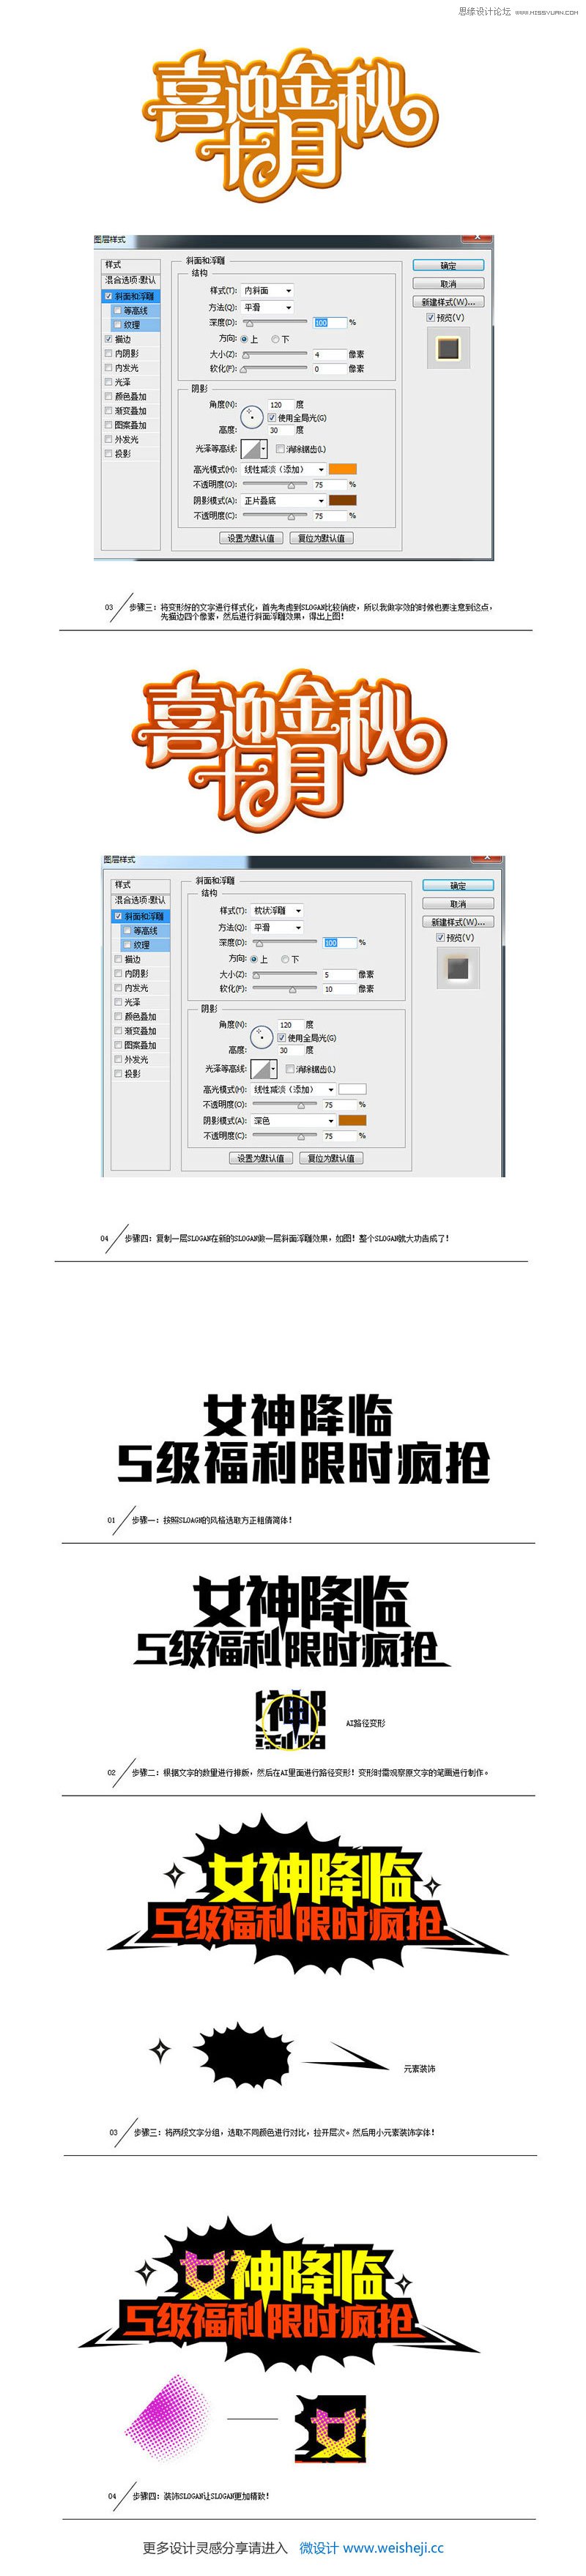 詳細解析中文海報字體設計心得技巧,PS教程